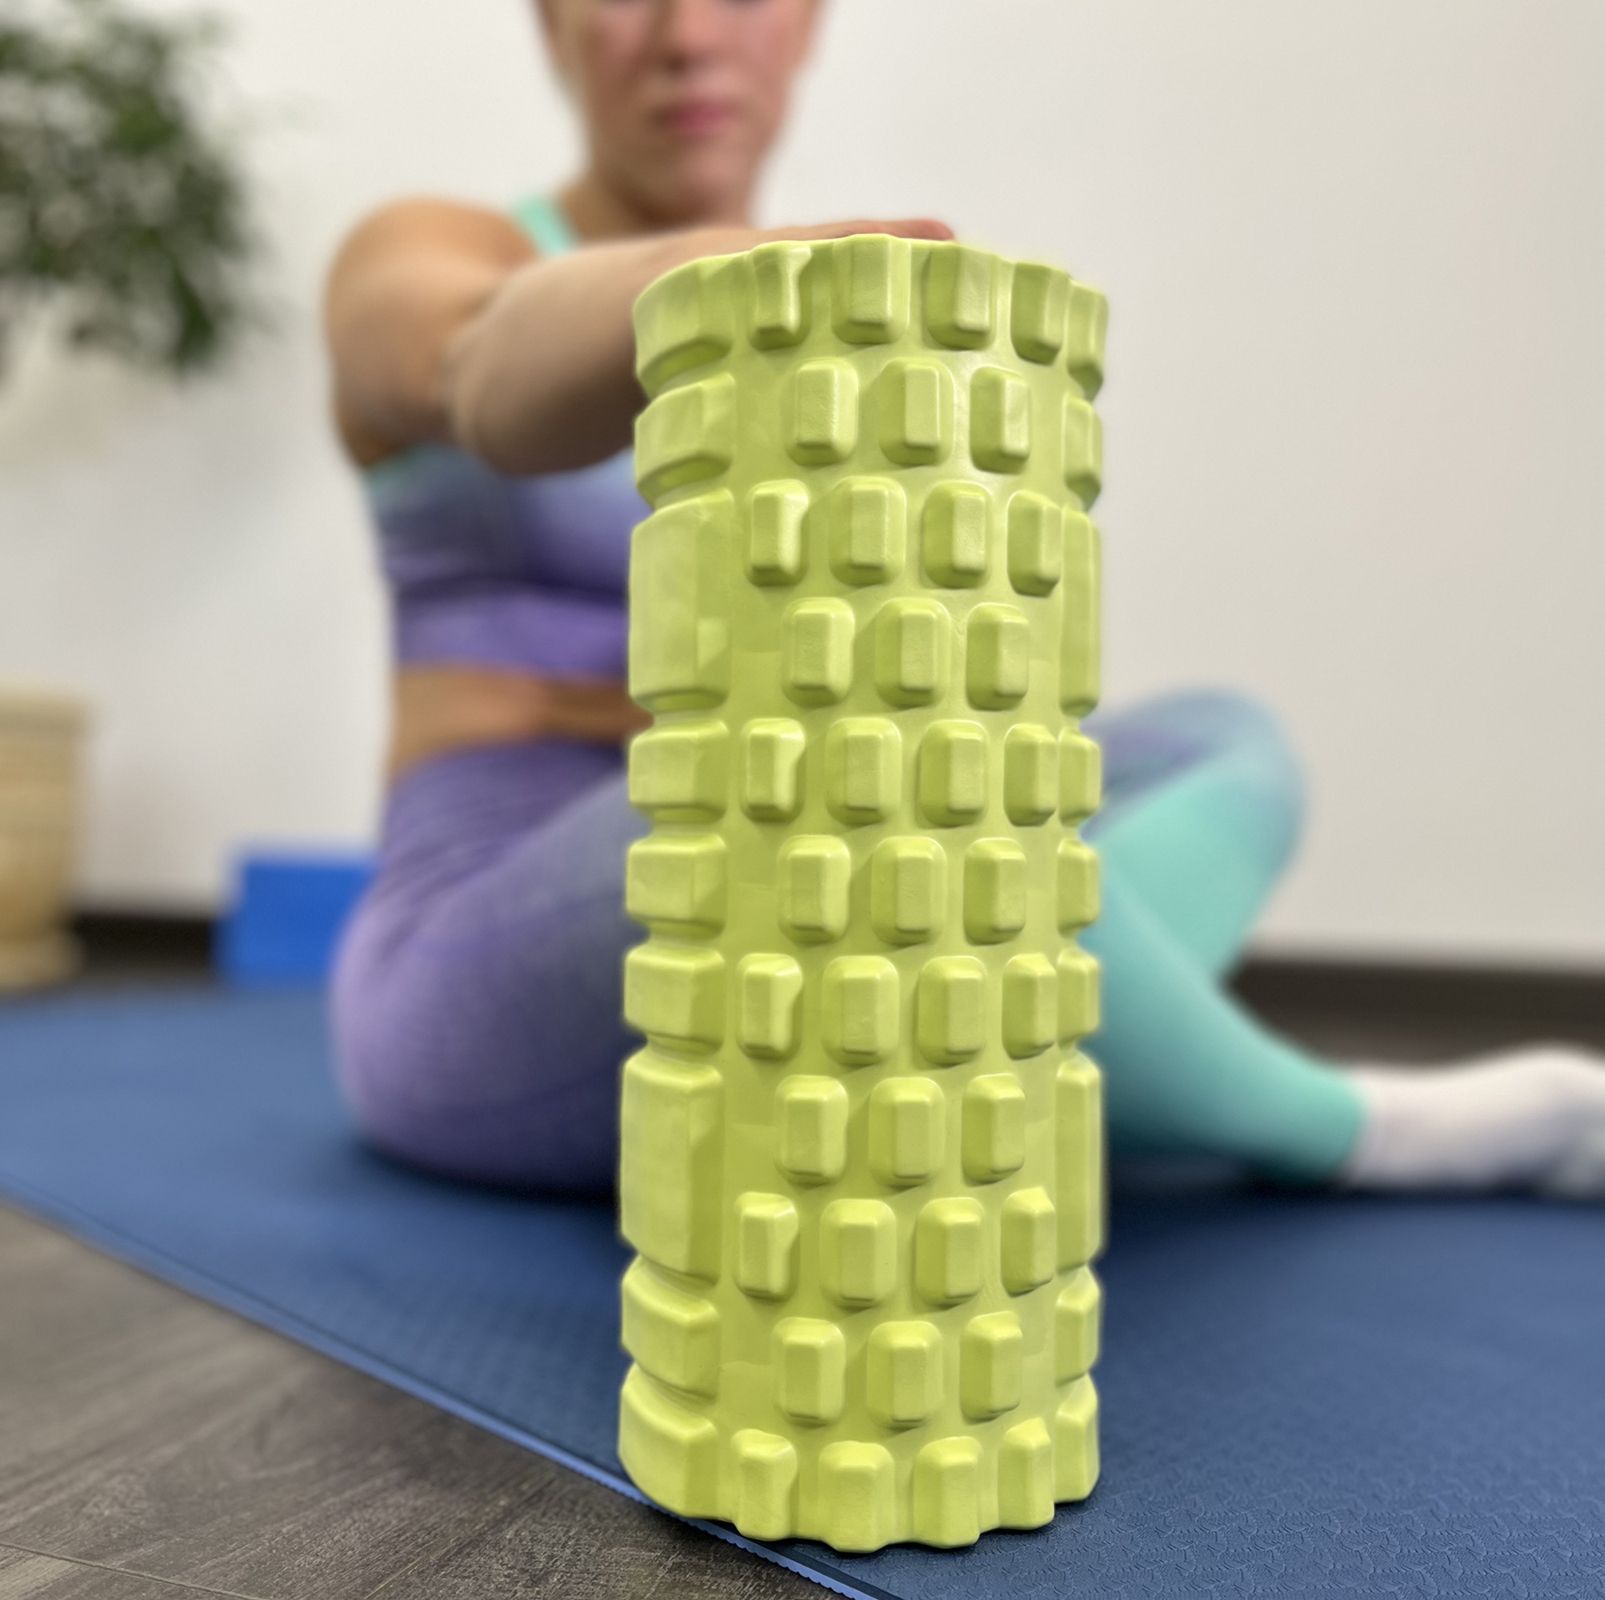 Ролик массажный для йоги и фитнеса UNIX Fit 45 см, зеленый